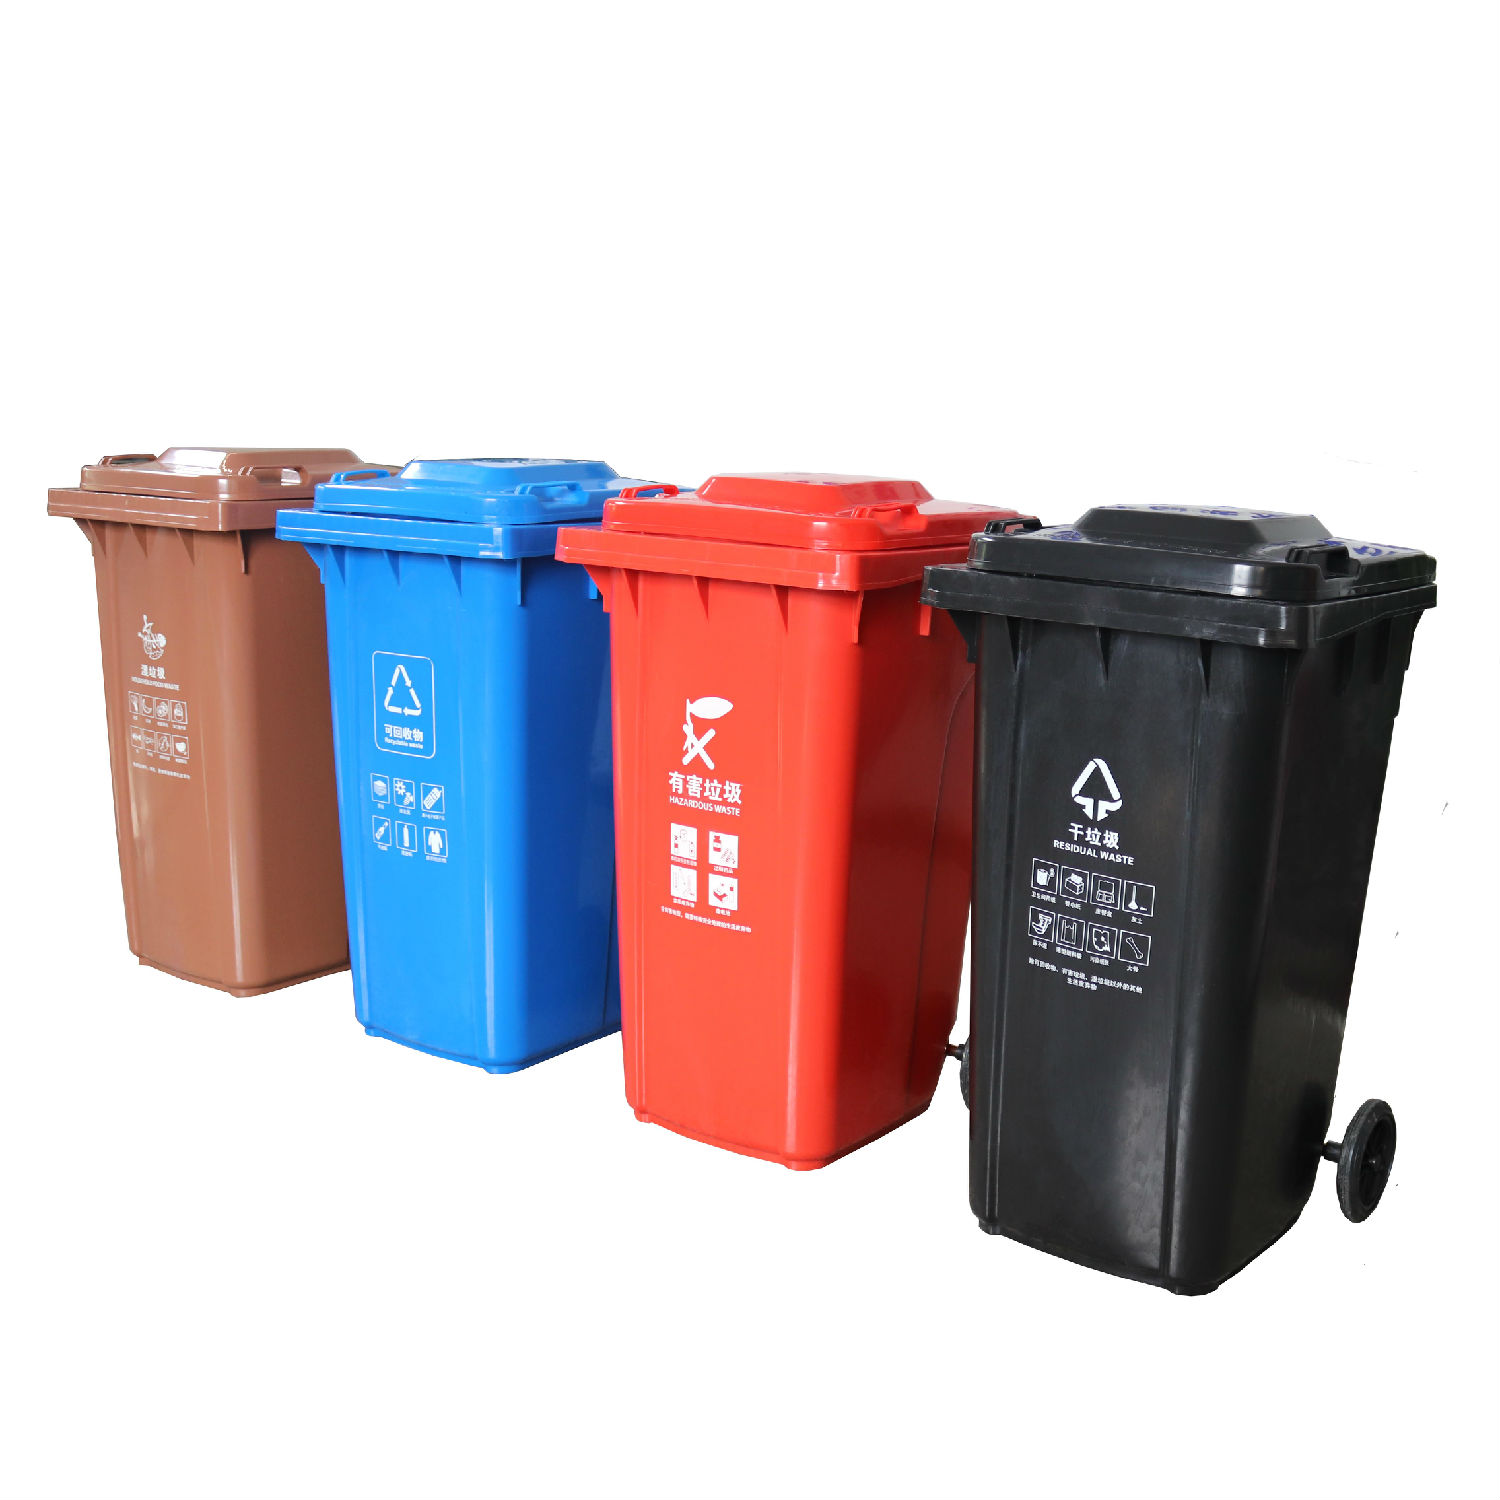 四色干湿分类垃圾桶